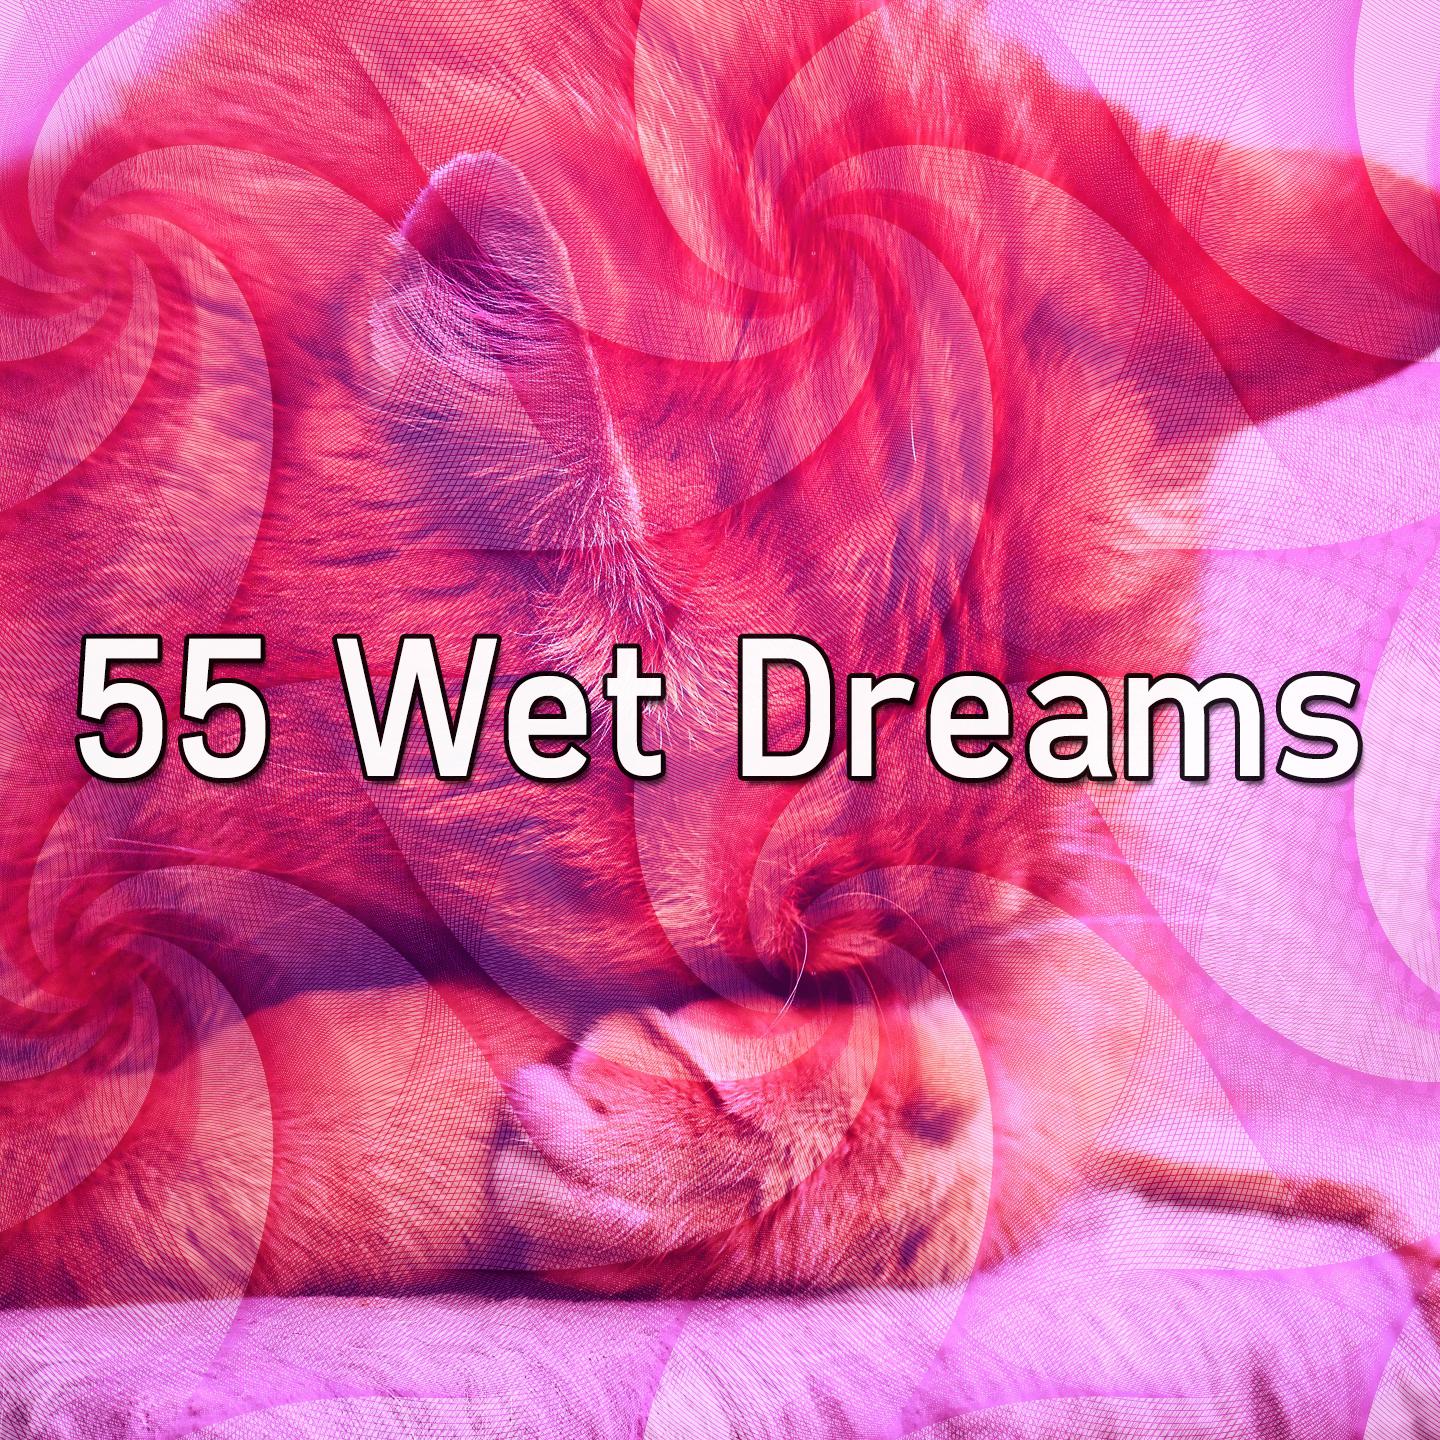 55 Wet Dreams